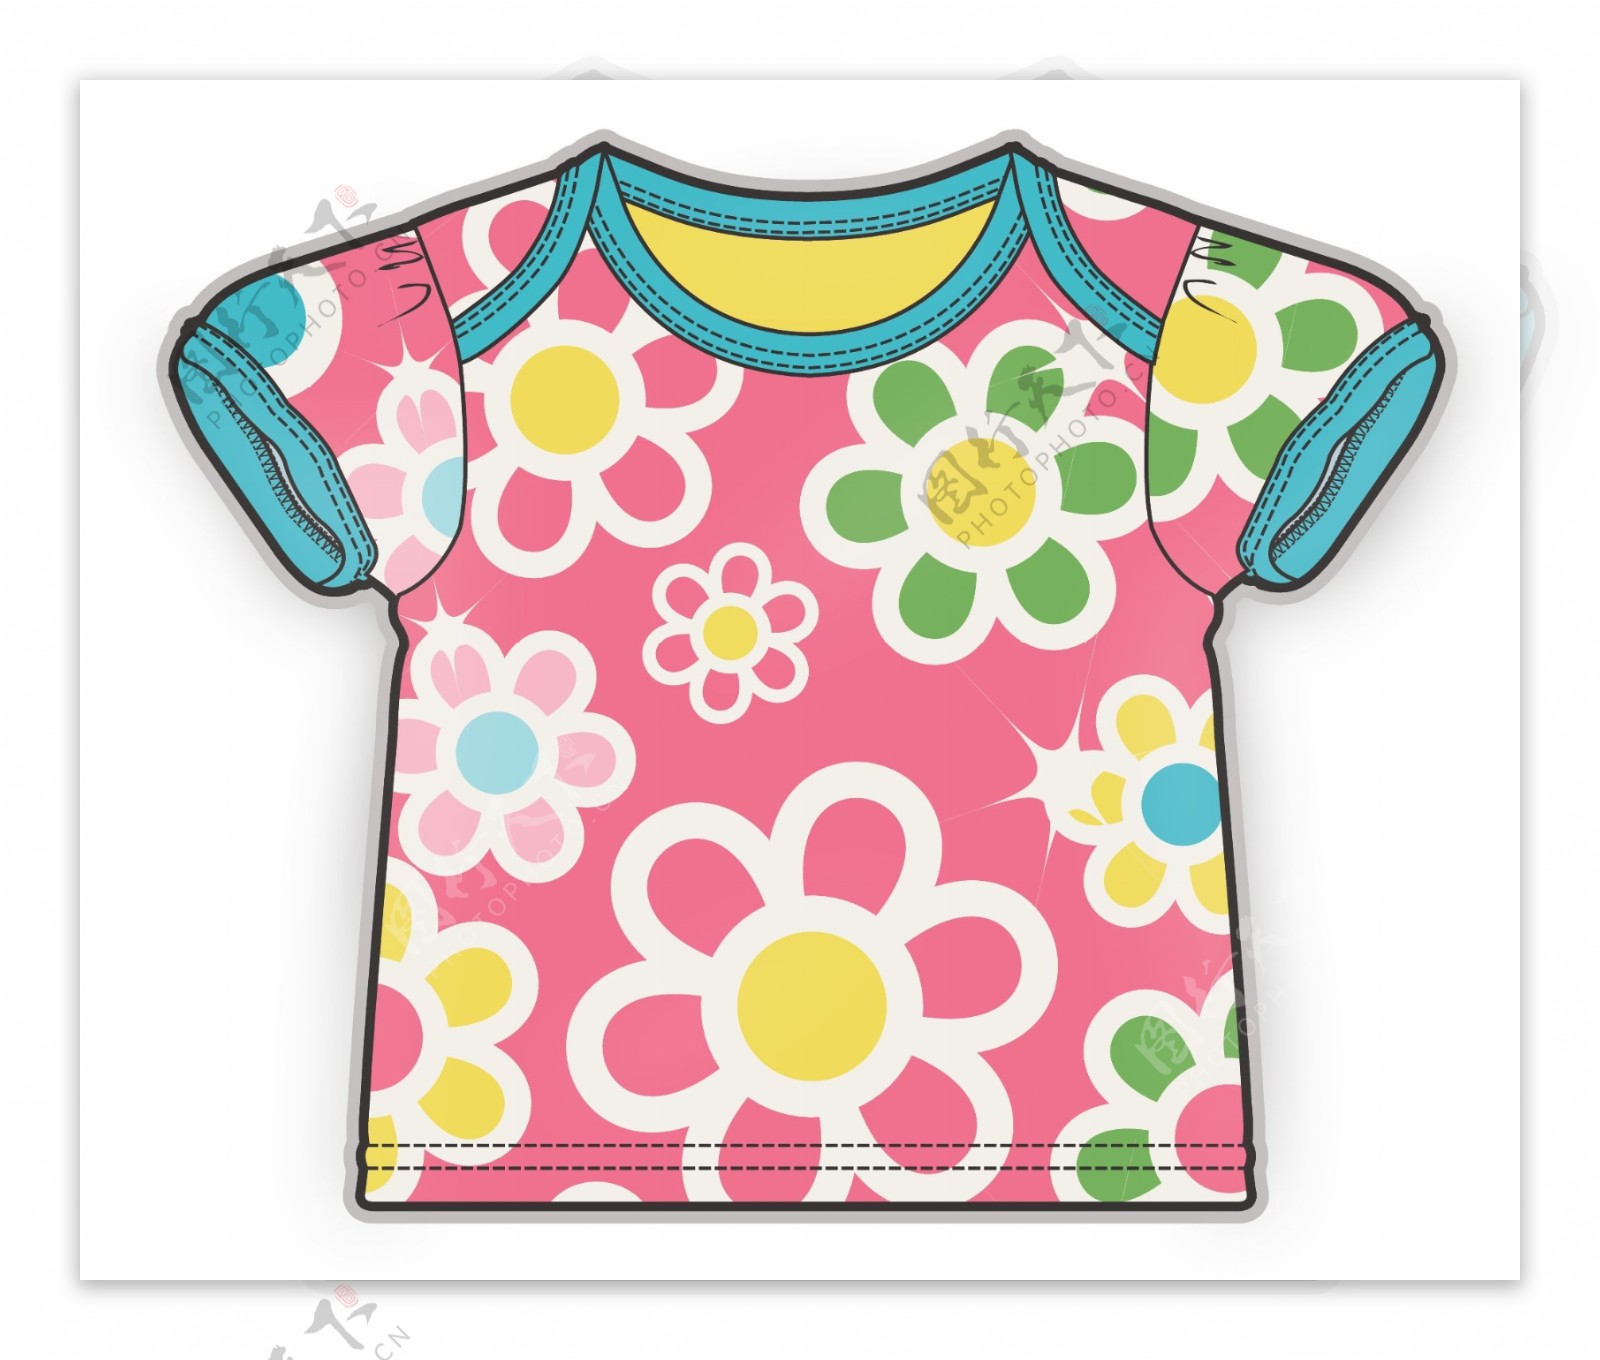 粉色短袖女宝宝服装设计彩色原稿矢量素材